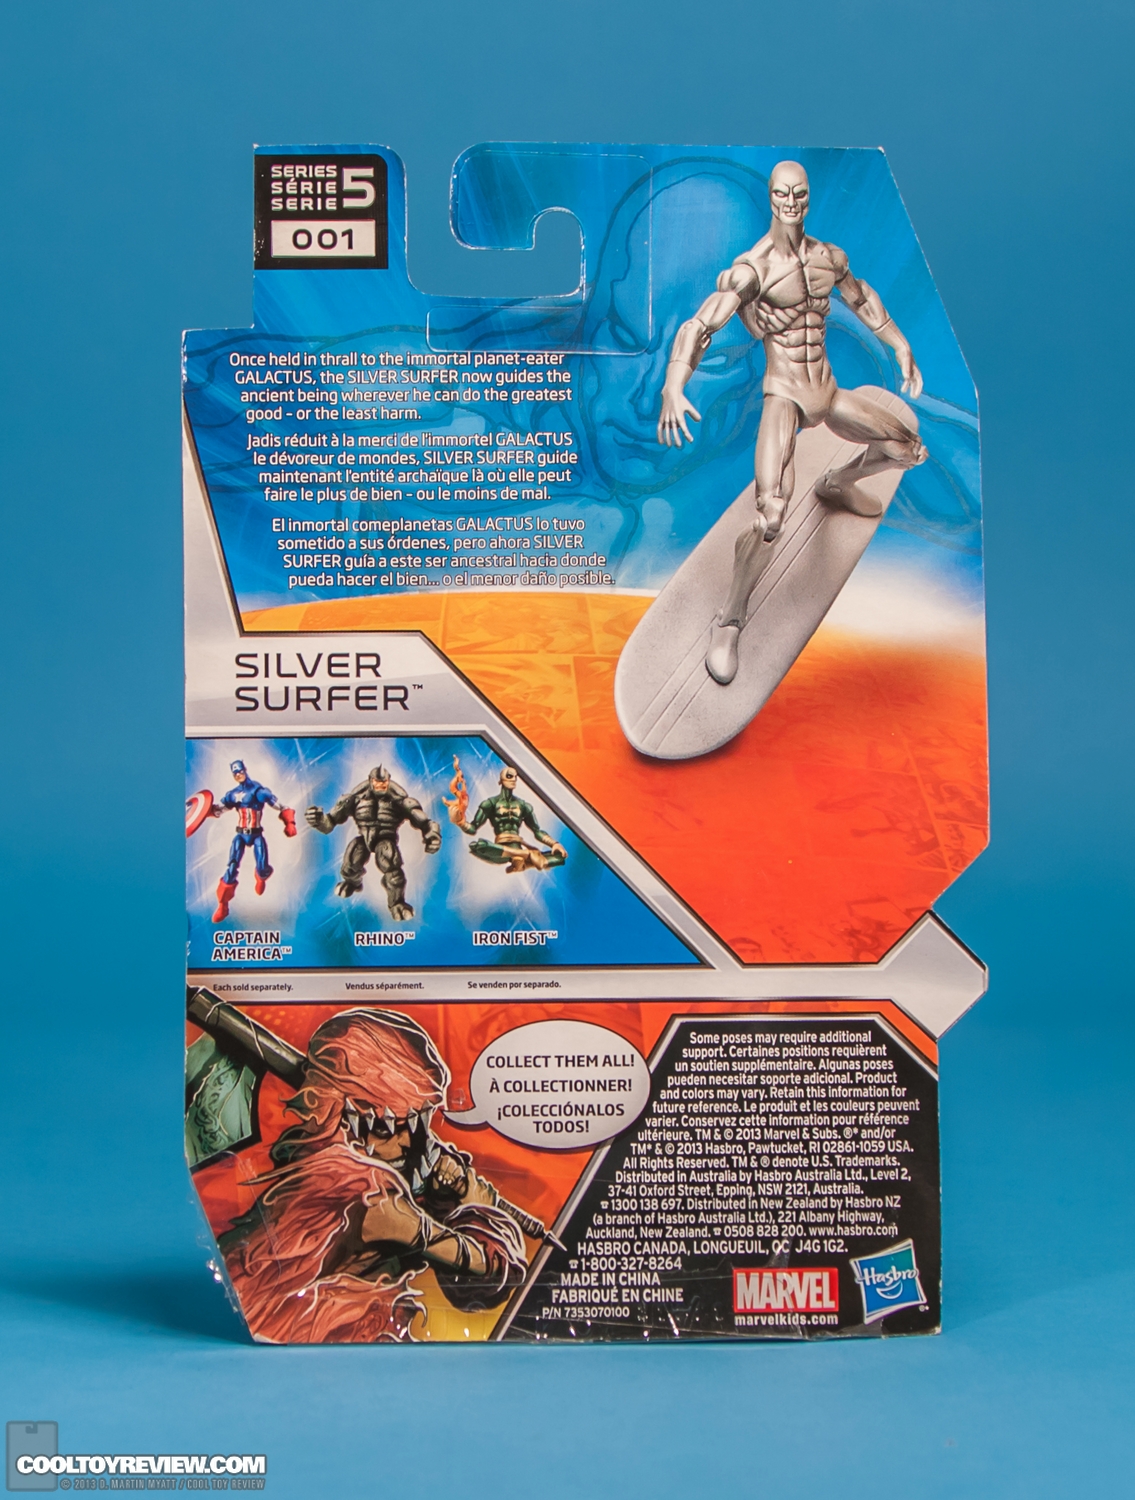 Series-5-01-Silver-Surfer-Marvel-Universe-Hasbro-2013-014.jpg